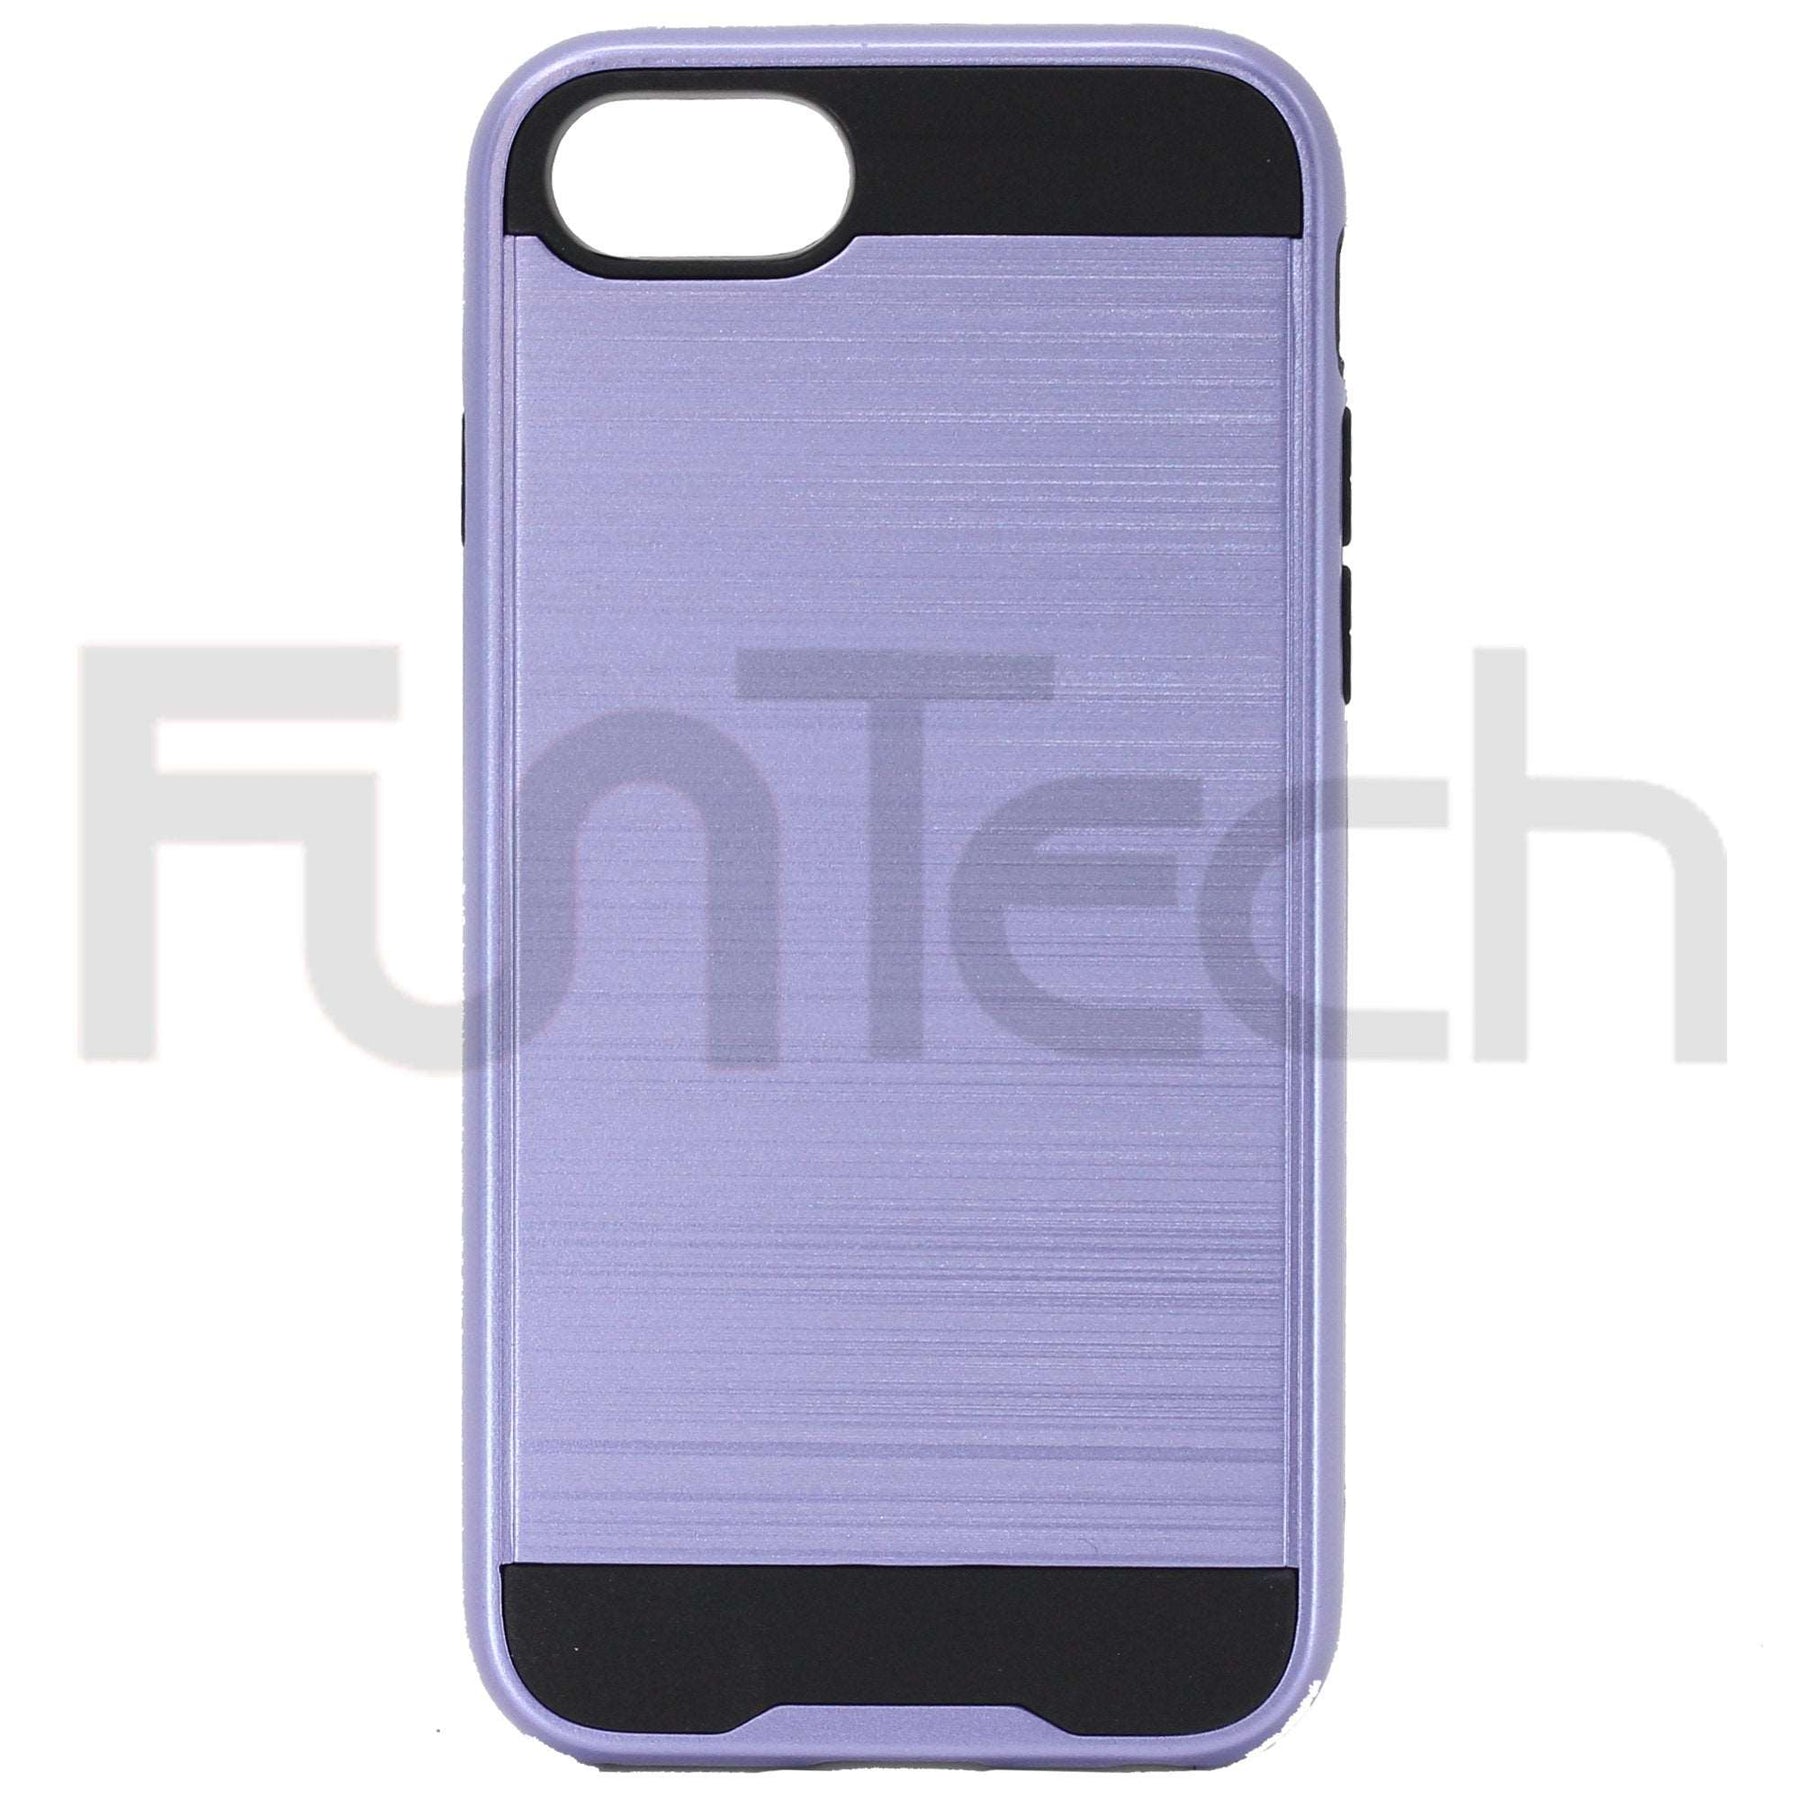 Apple iPhone 7/8 SE2020 Slim Armor Case Purple